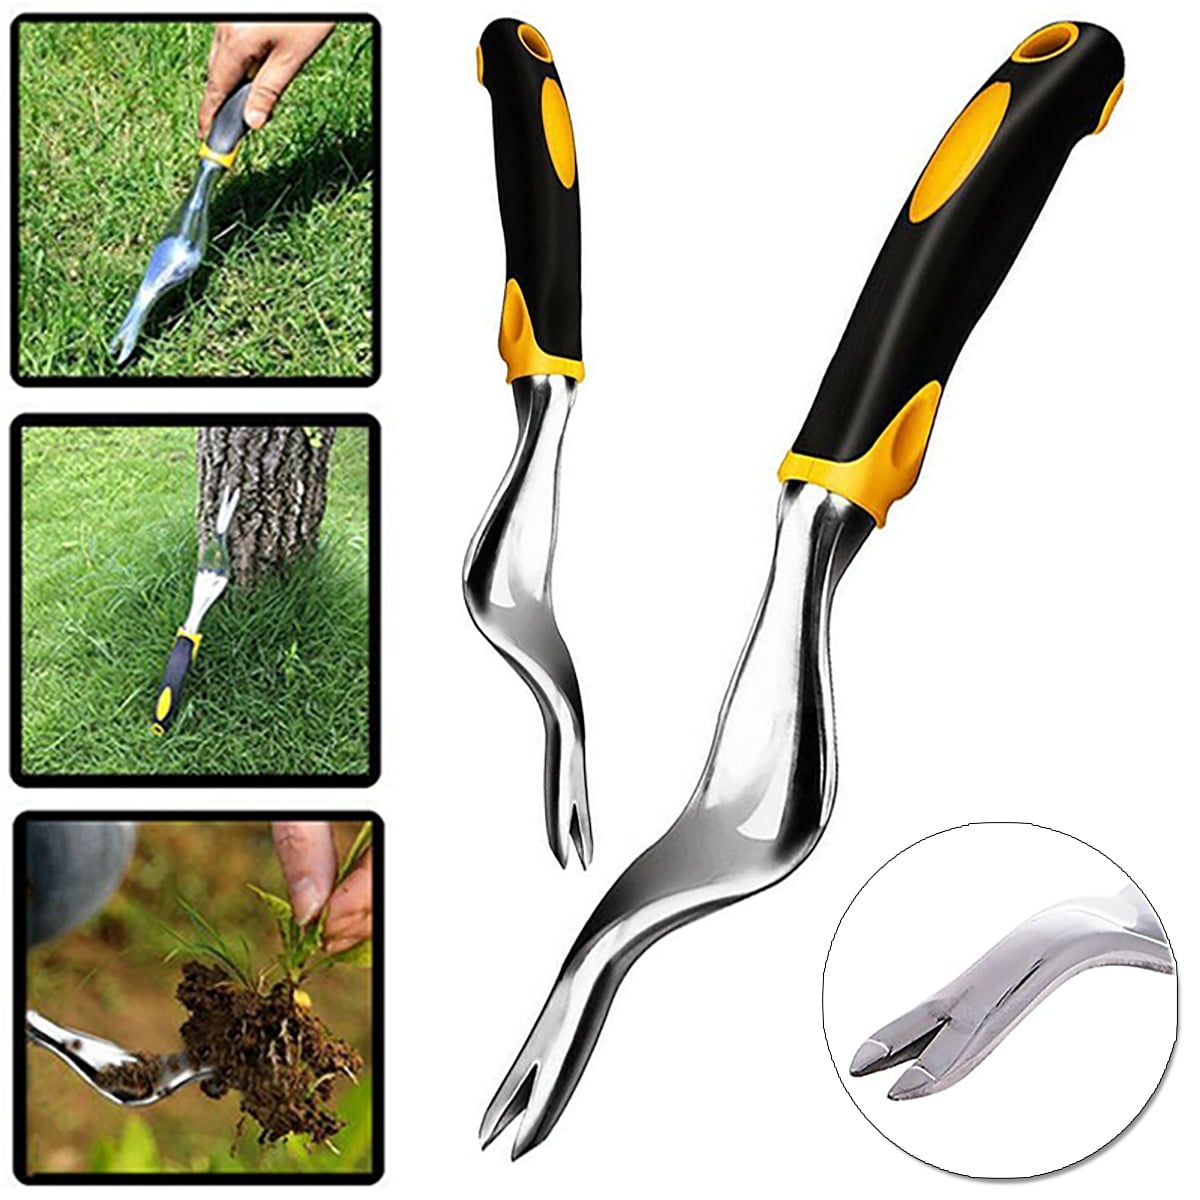 LYNN Manual Hand Weeder Weeding Weed Remover Puller Tool Fork Sponge Grip Lawn Garden Tools Stainless Steel